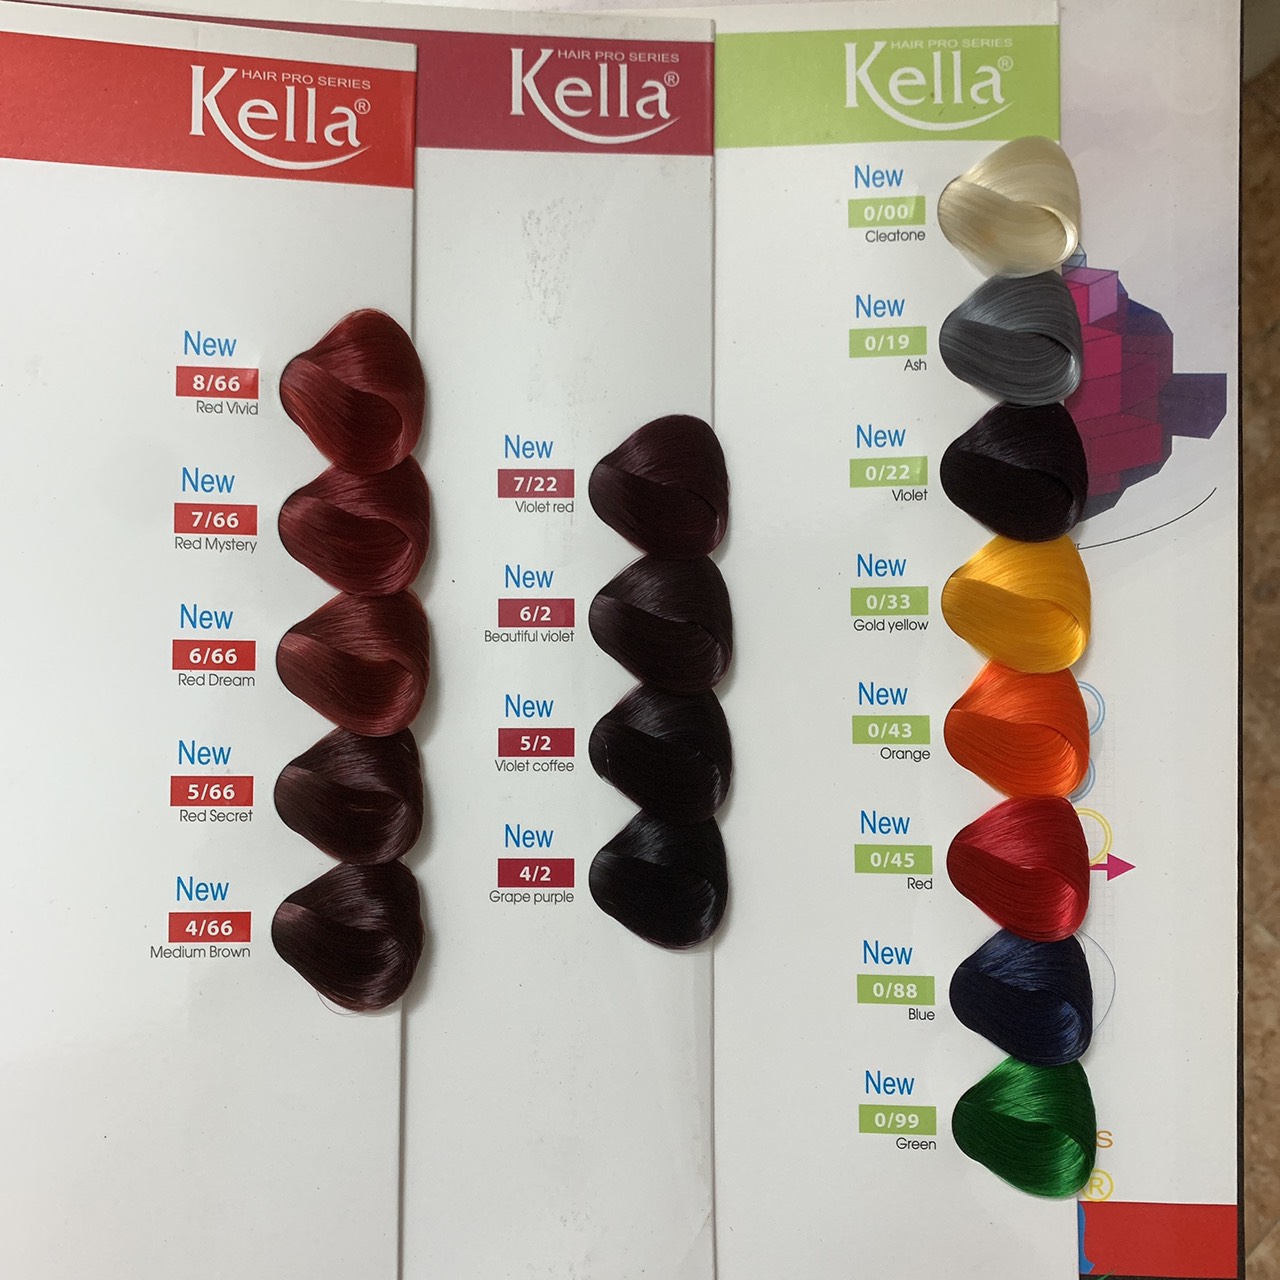 Kella thế hệ mới - sản phẩm tuyệt đỉnh cho bạn làm đẹp. Được thiết kế với công nghệ hiện đại, Kella thế hệ mới cho phép bạn tạo kiểu tóc một cách tự nhiên và dễ dàng hơn. Với nhiều tính năng thông minh, sản phẩm này sẽ làm hài lòng cả những khách hàng khó tính nhất.